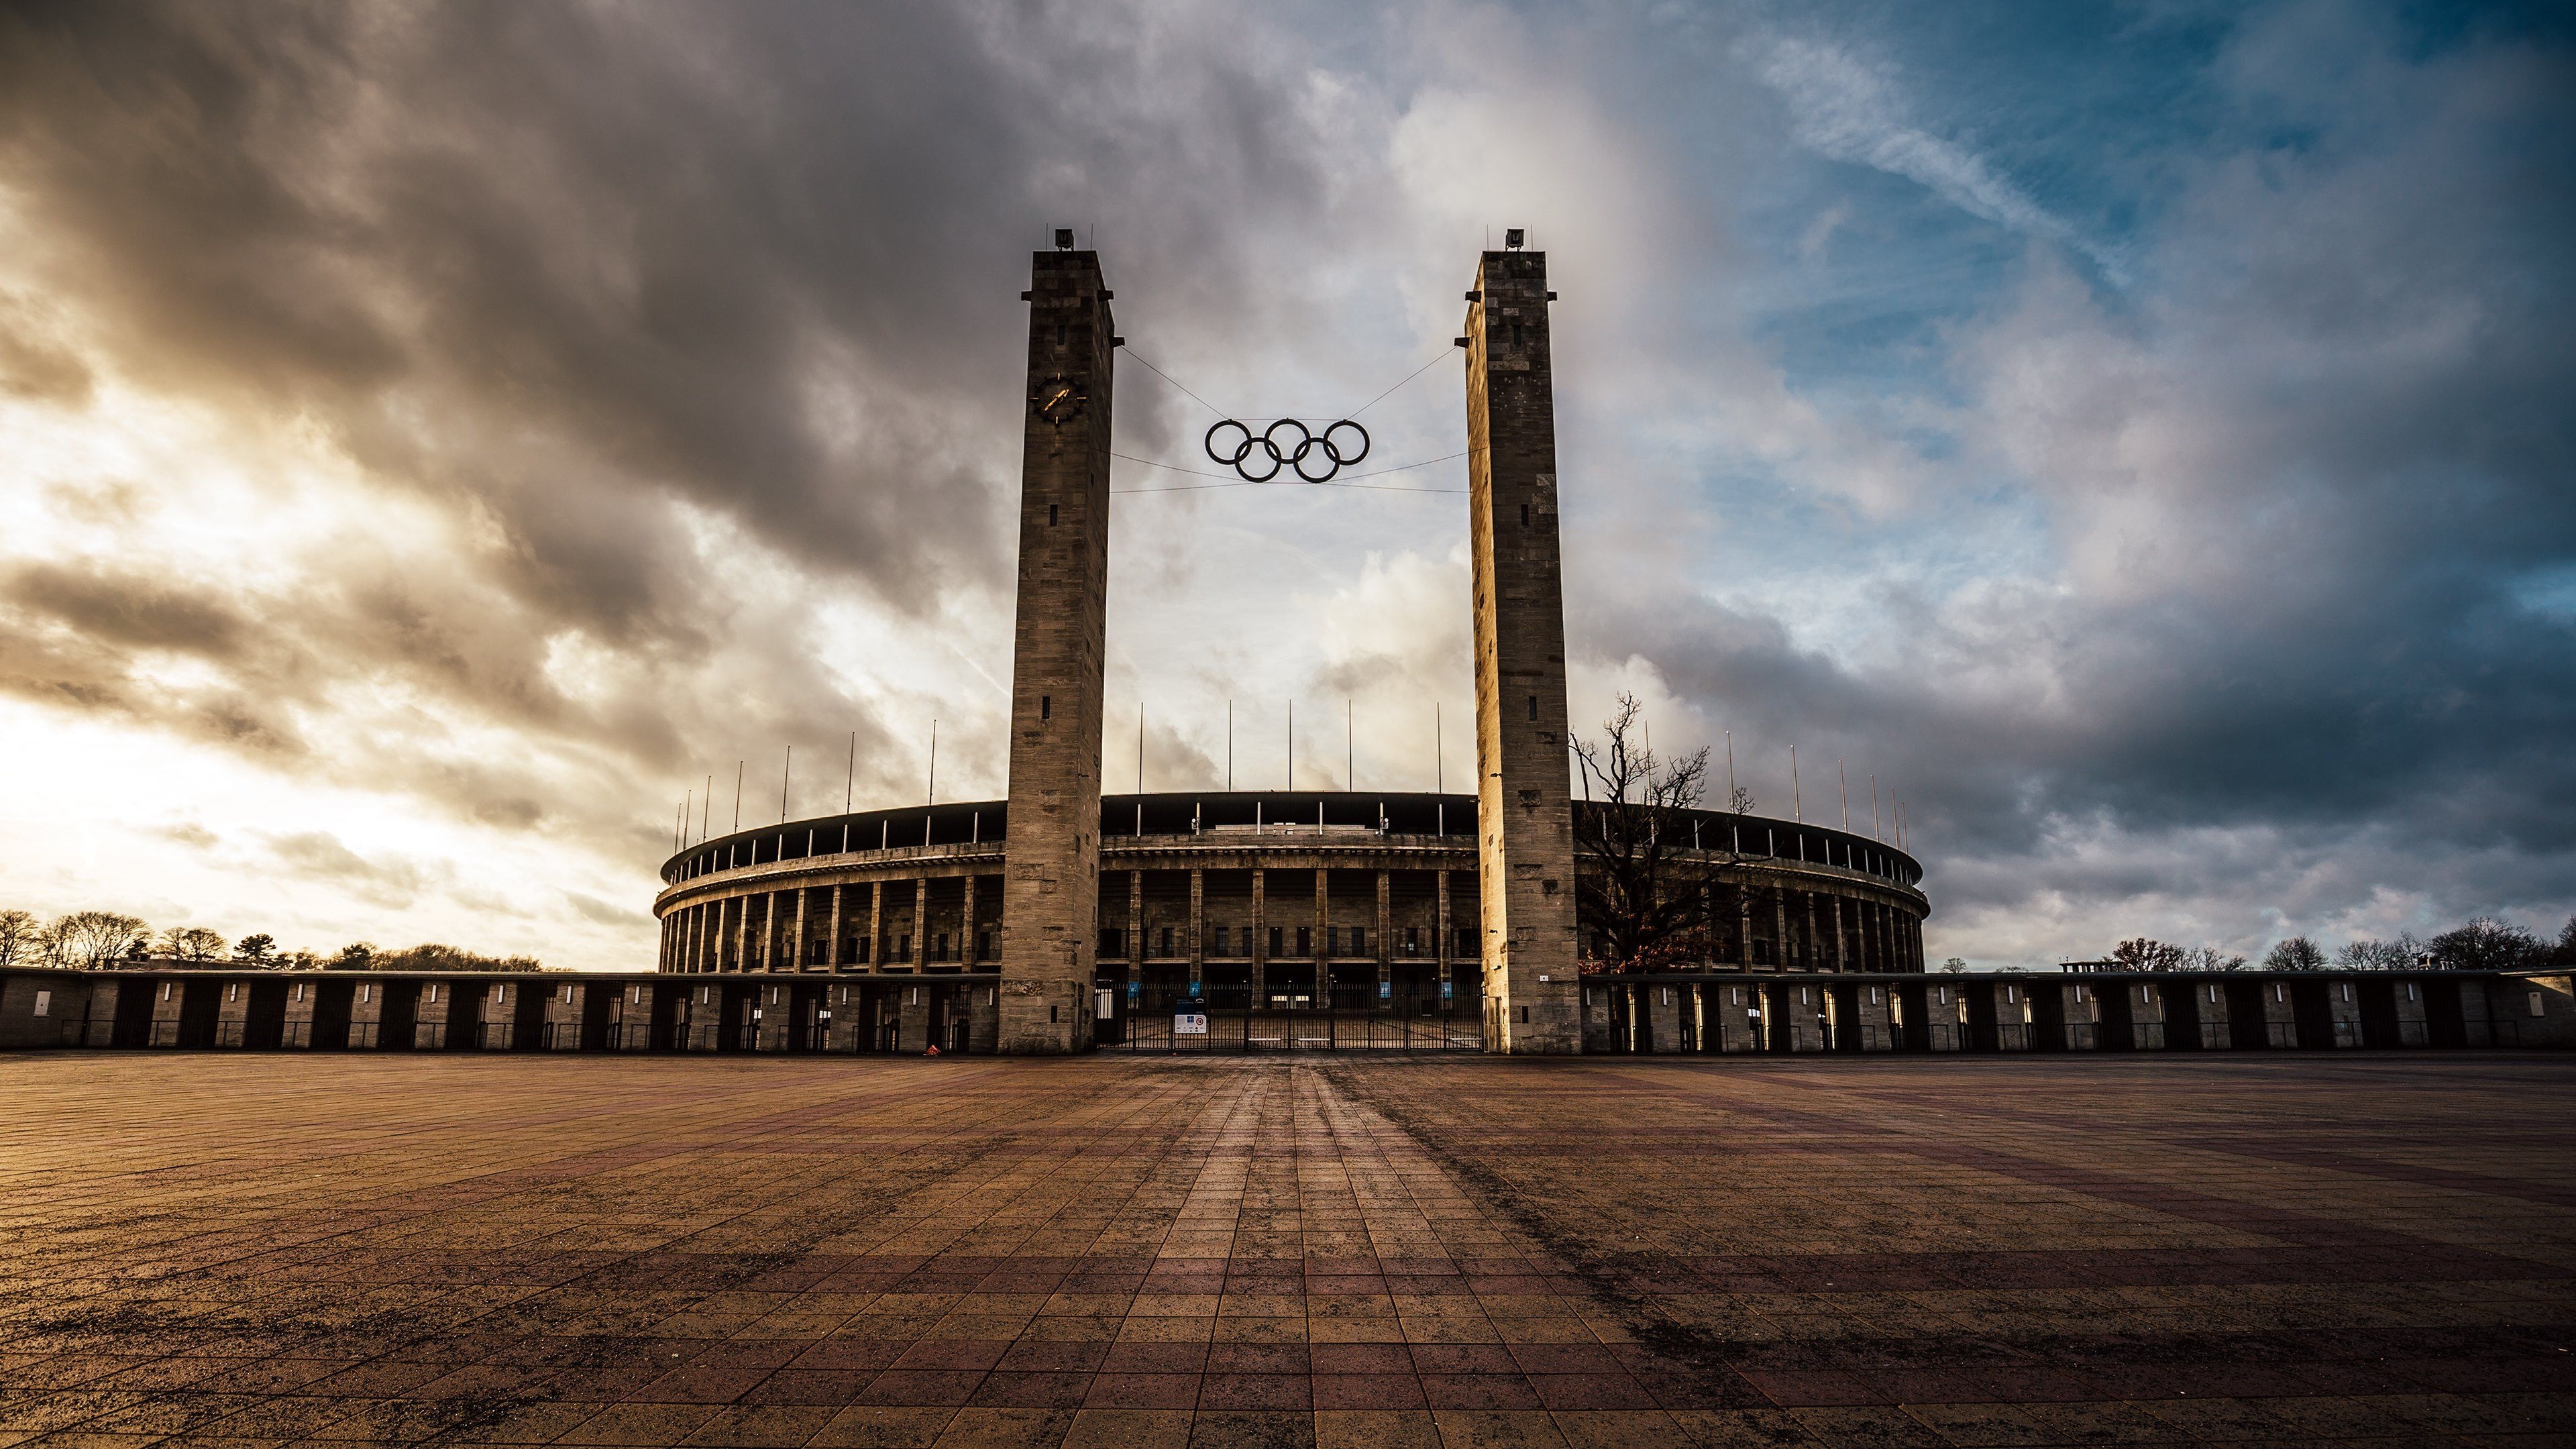 Olympics: The Olympiastadion, A sports stadium at Olympiapark Berlin, Germany. 3840x2160 4K Wallpaper.